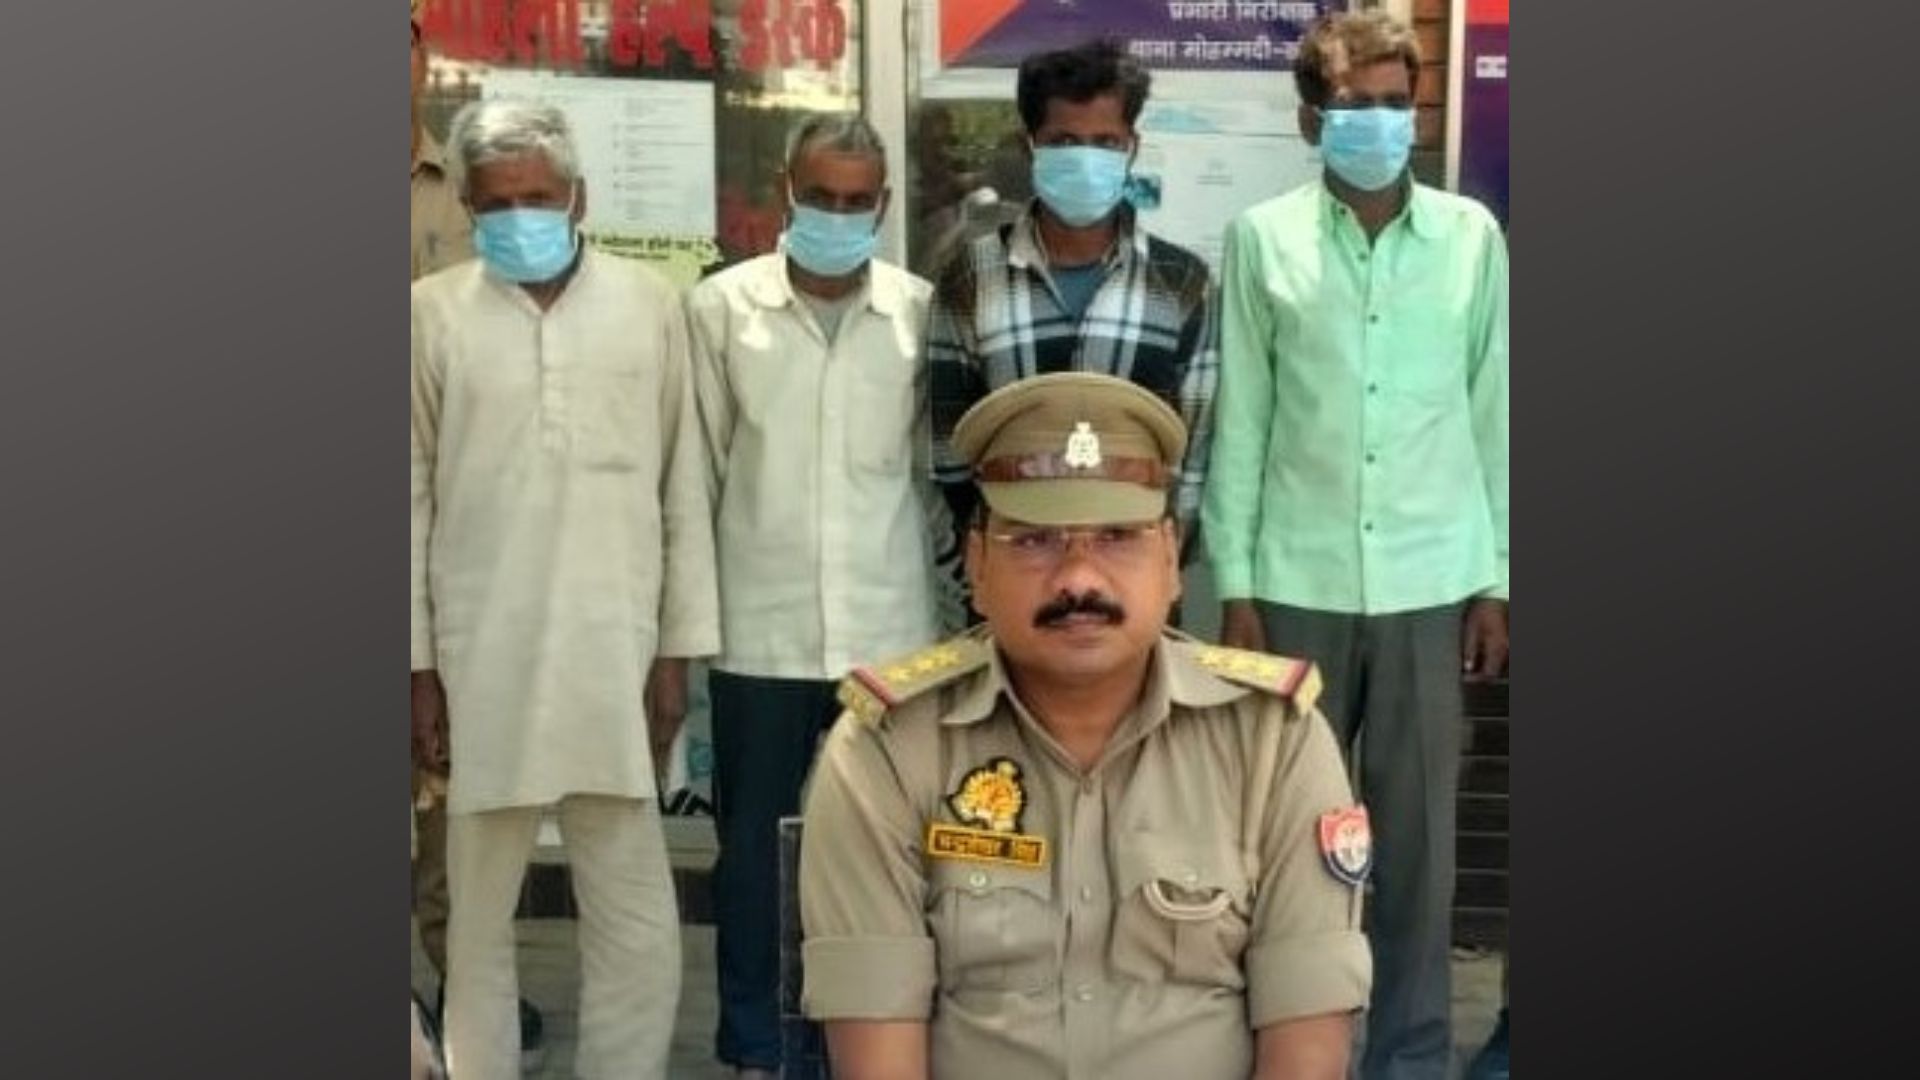 लखीमपुर खीरी: अंतर्जनपदीय चोर गिरोह का खुलासा, चार शातिर बदमाश गिरफ्तार